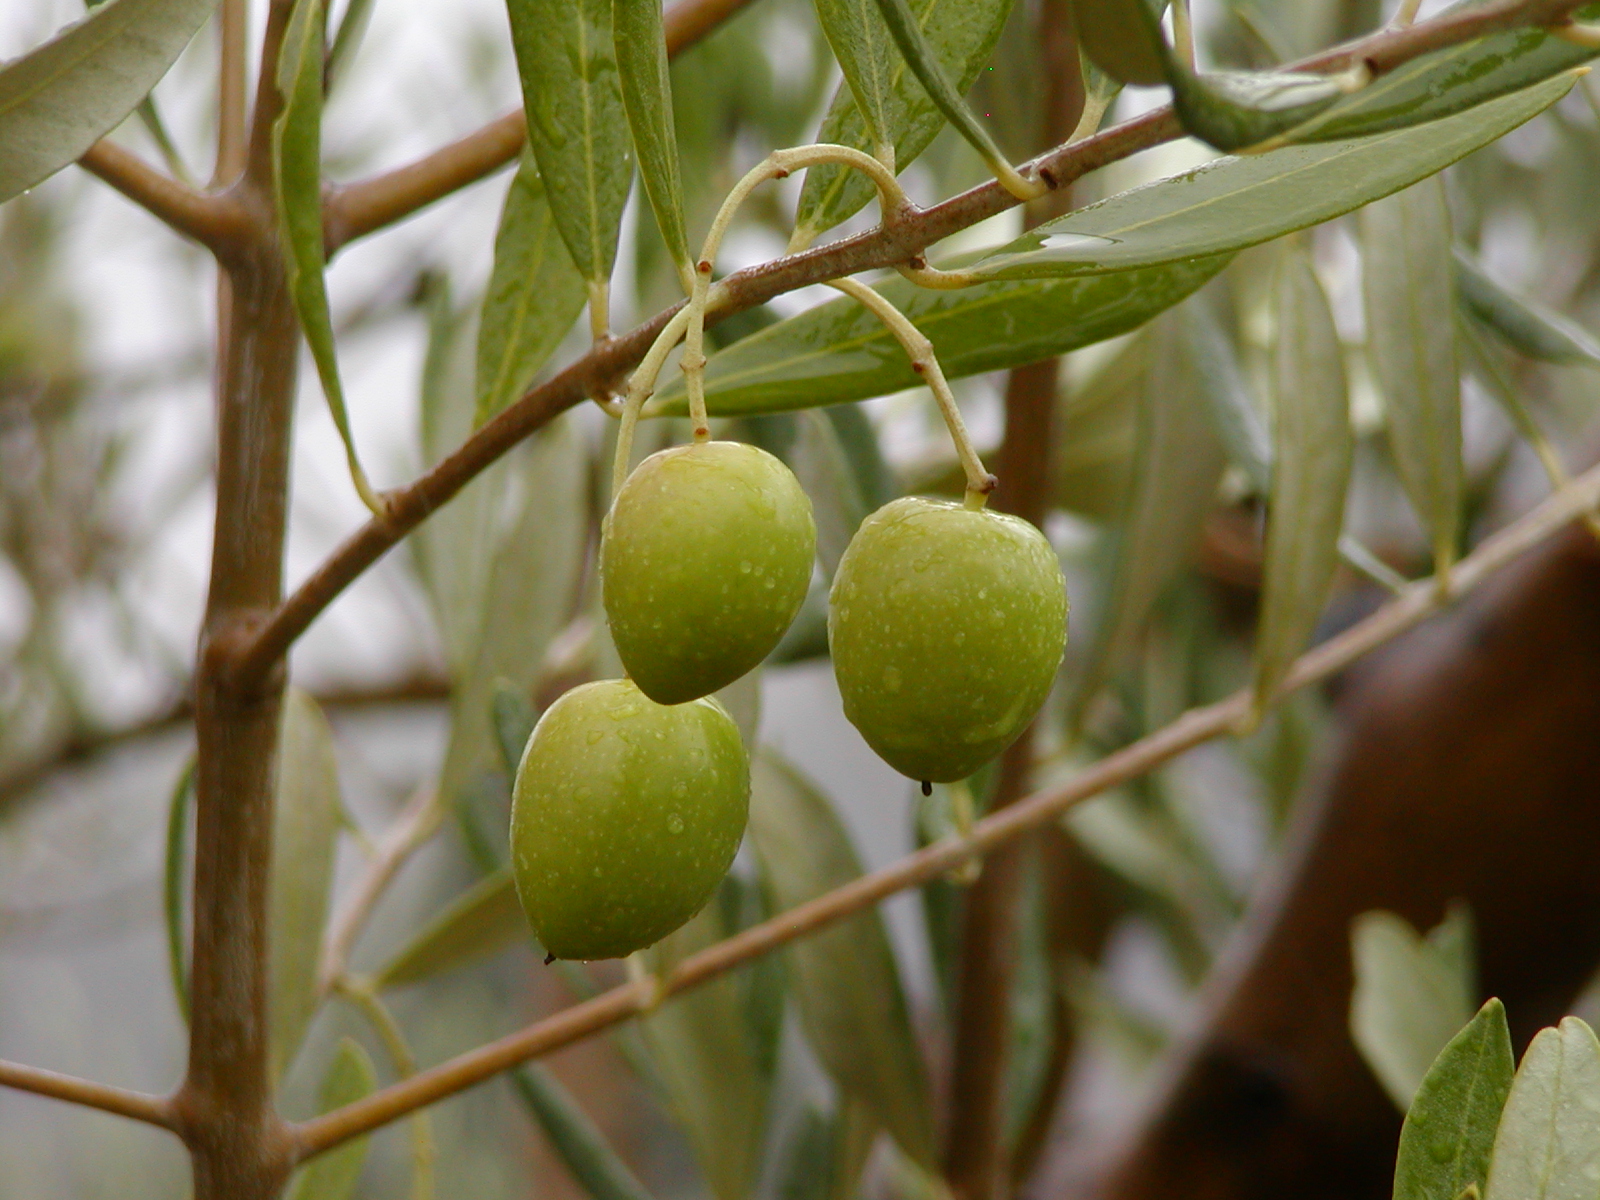 olives used for olive oil